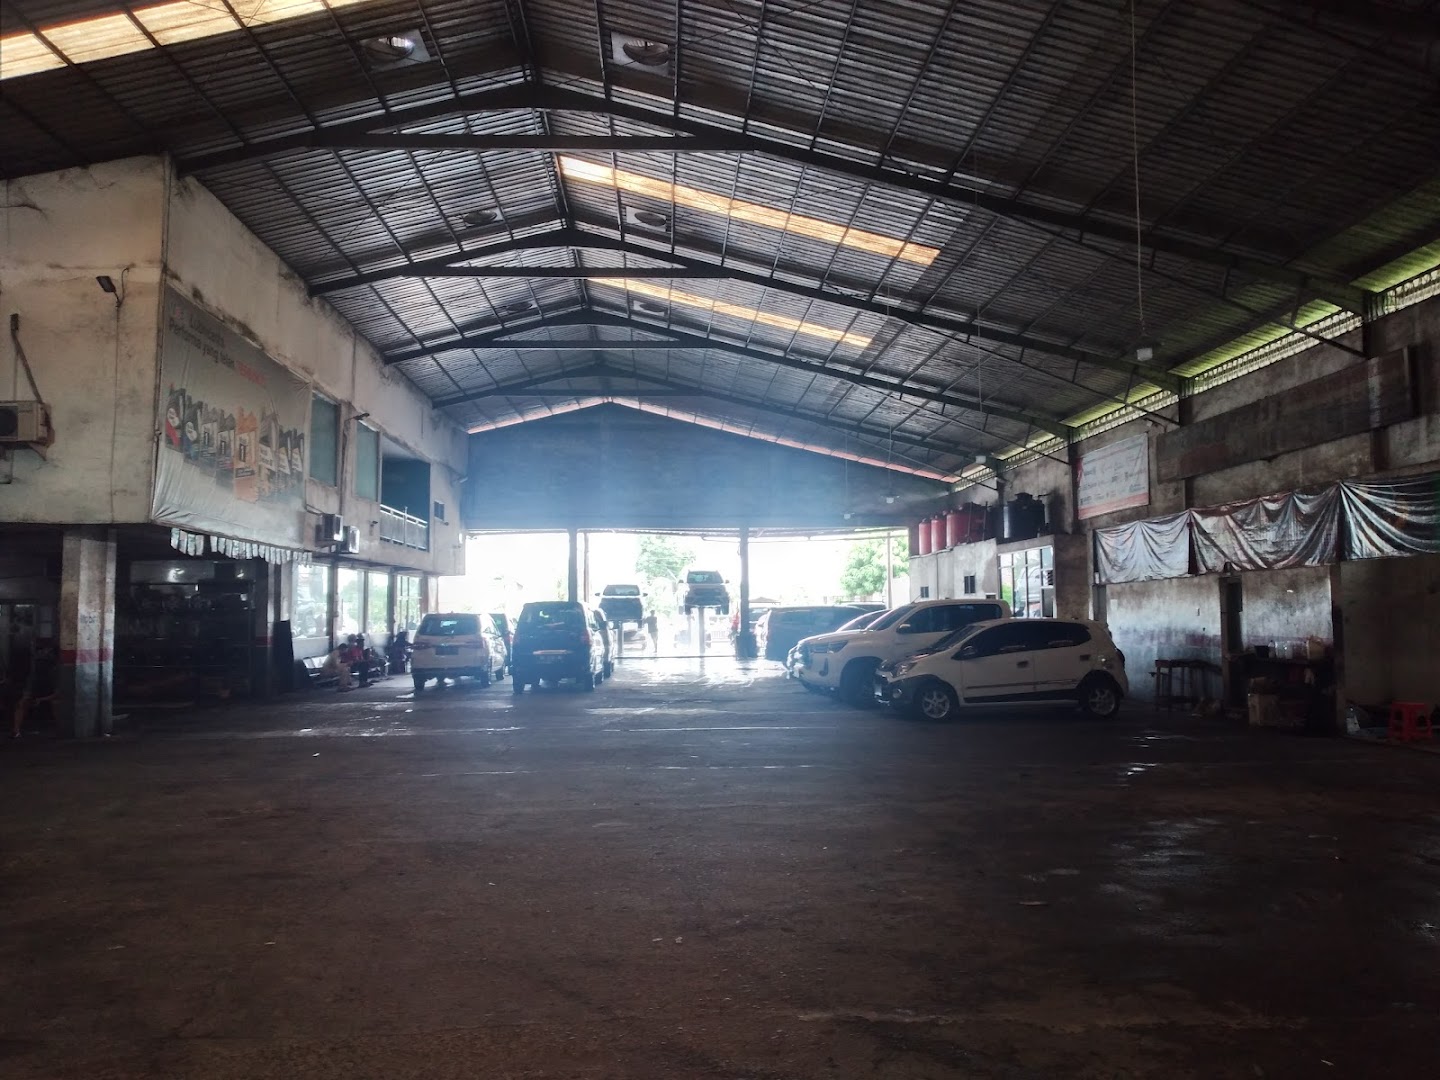 Bengkel Nusantara Tyre And Service Shop Photo